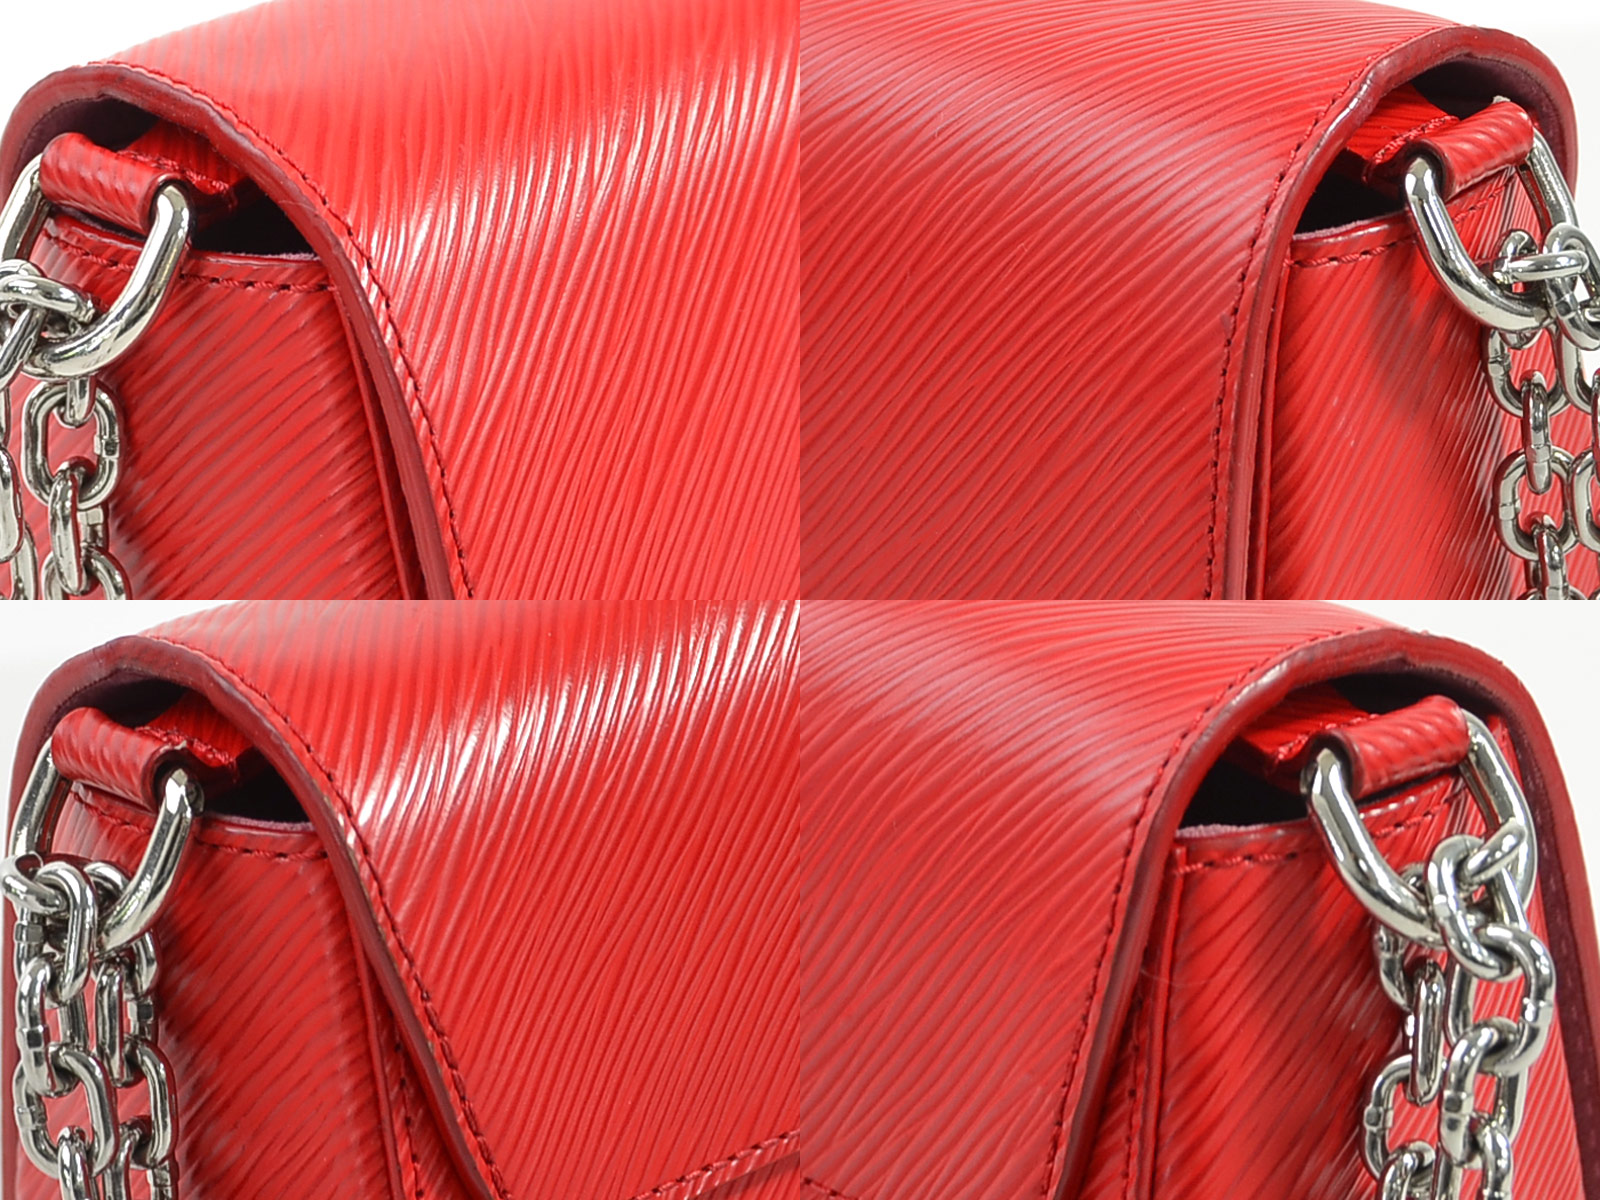 Auth Louis Vuitton Epi Twist MM Chain Shoulder Bag Red/Silver M50523 - 98065d | eBay